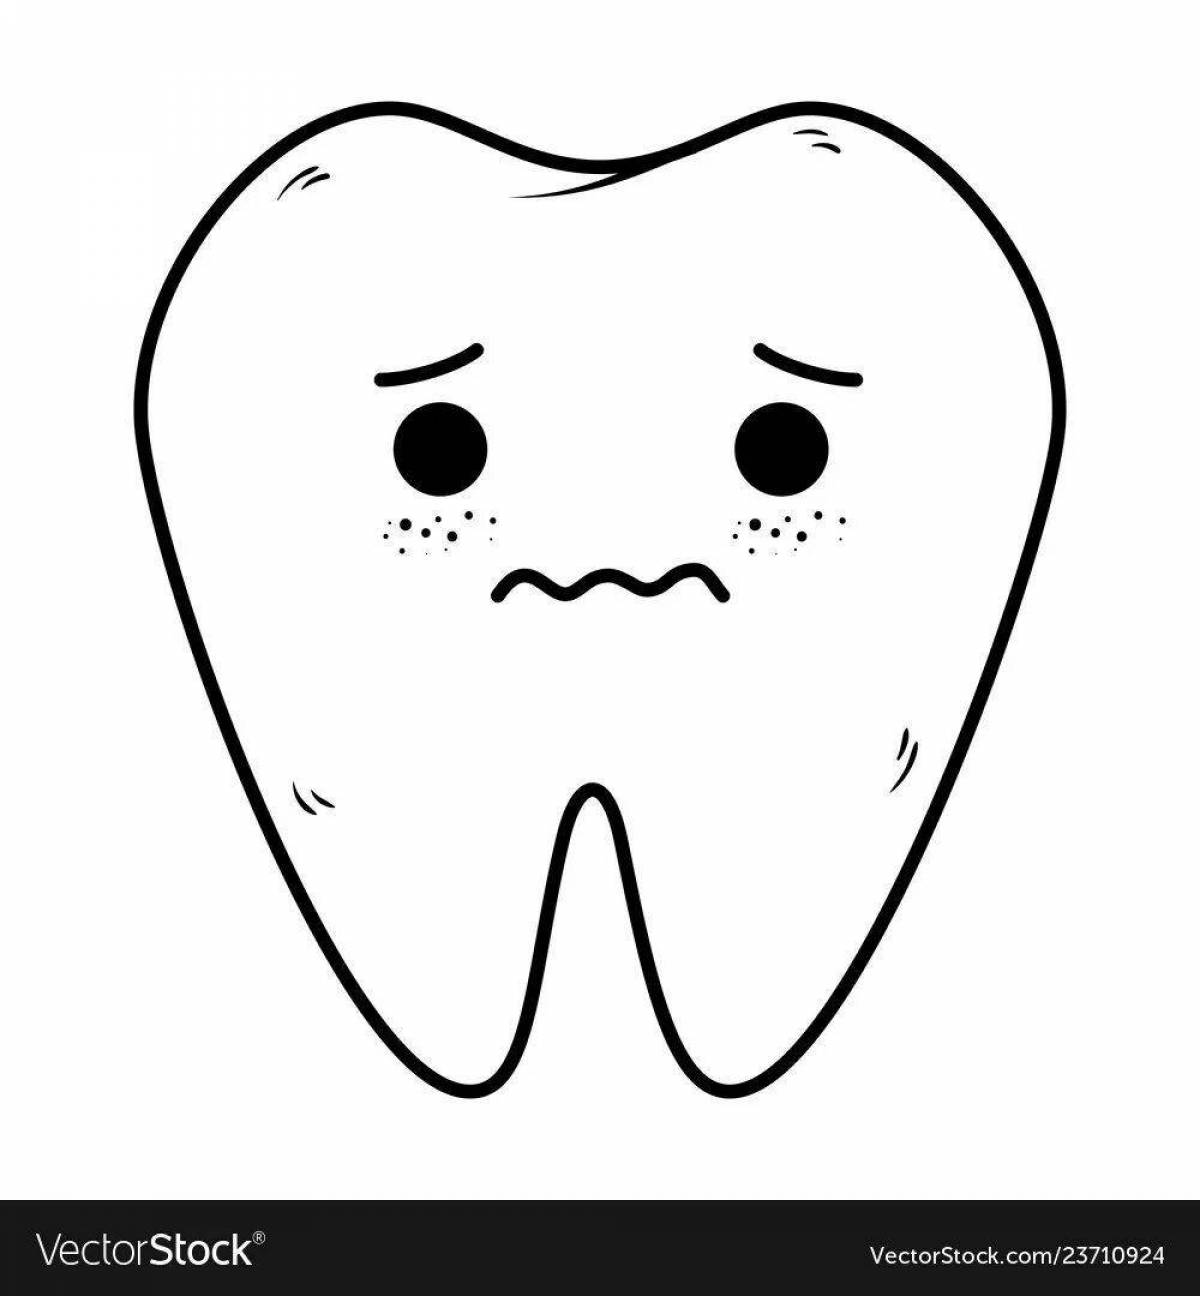 Sad tooth #5